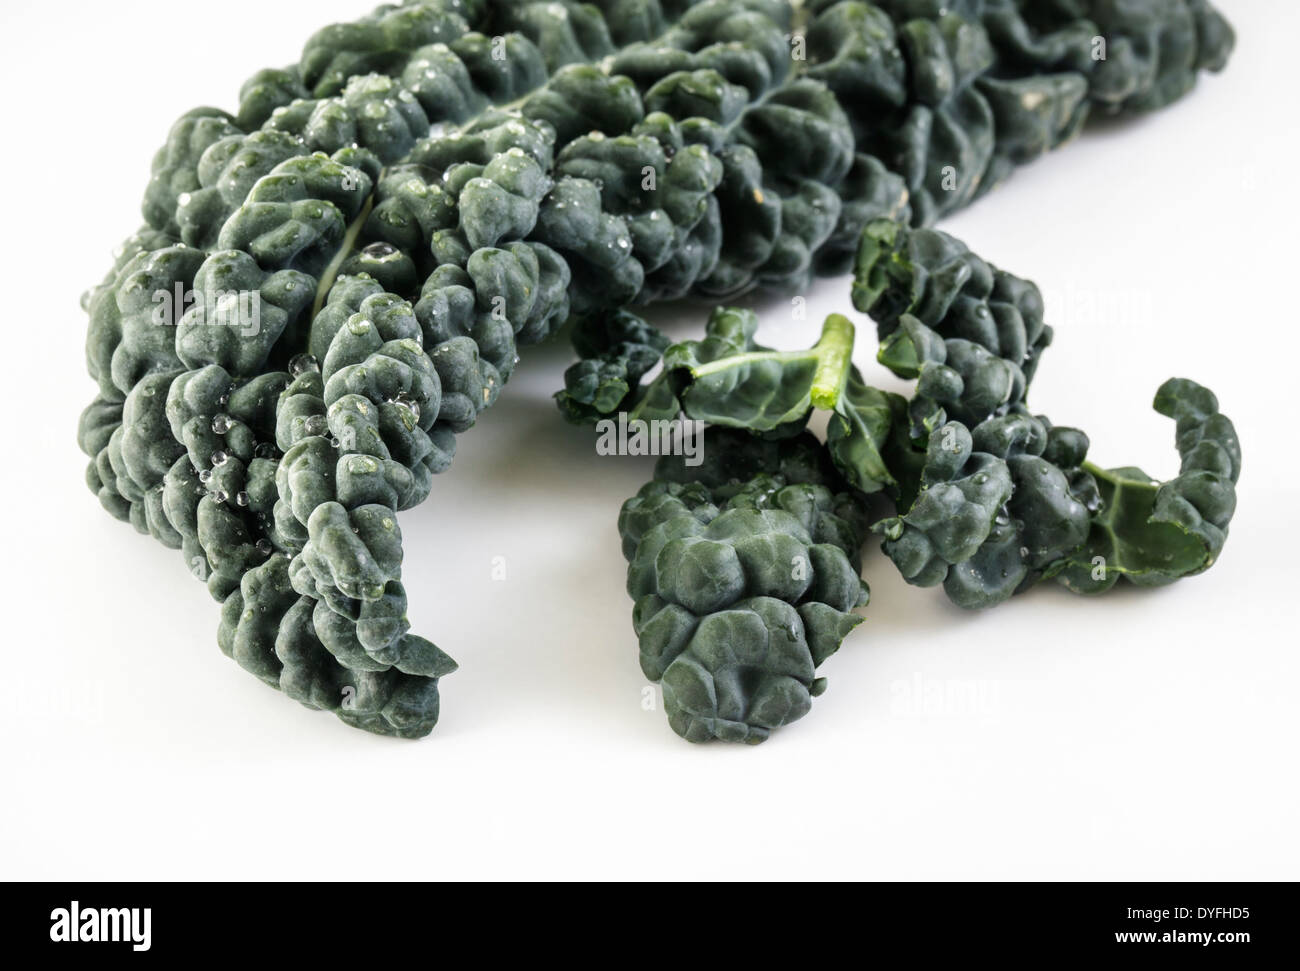 Cavolo Nero, Italian black Cabbage close up Stock Photo